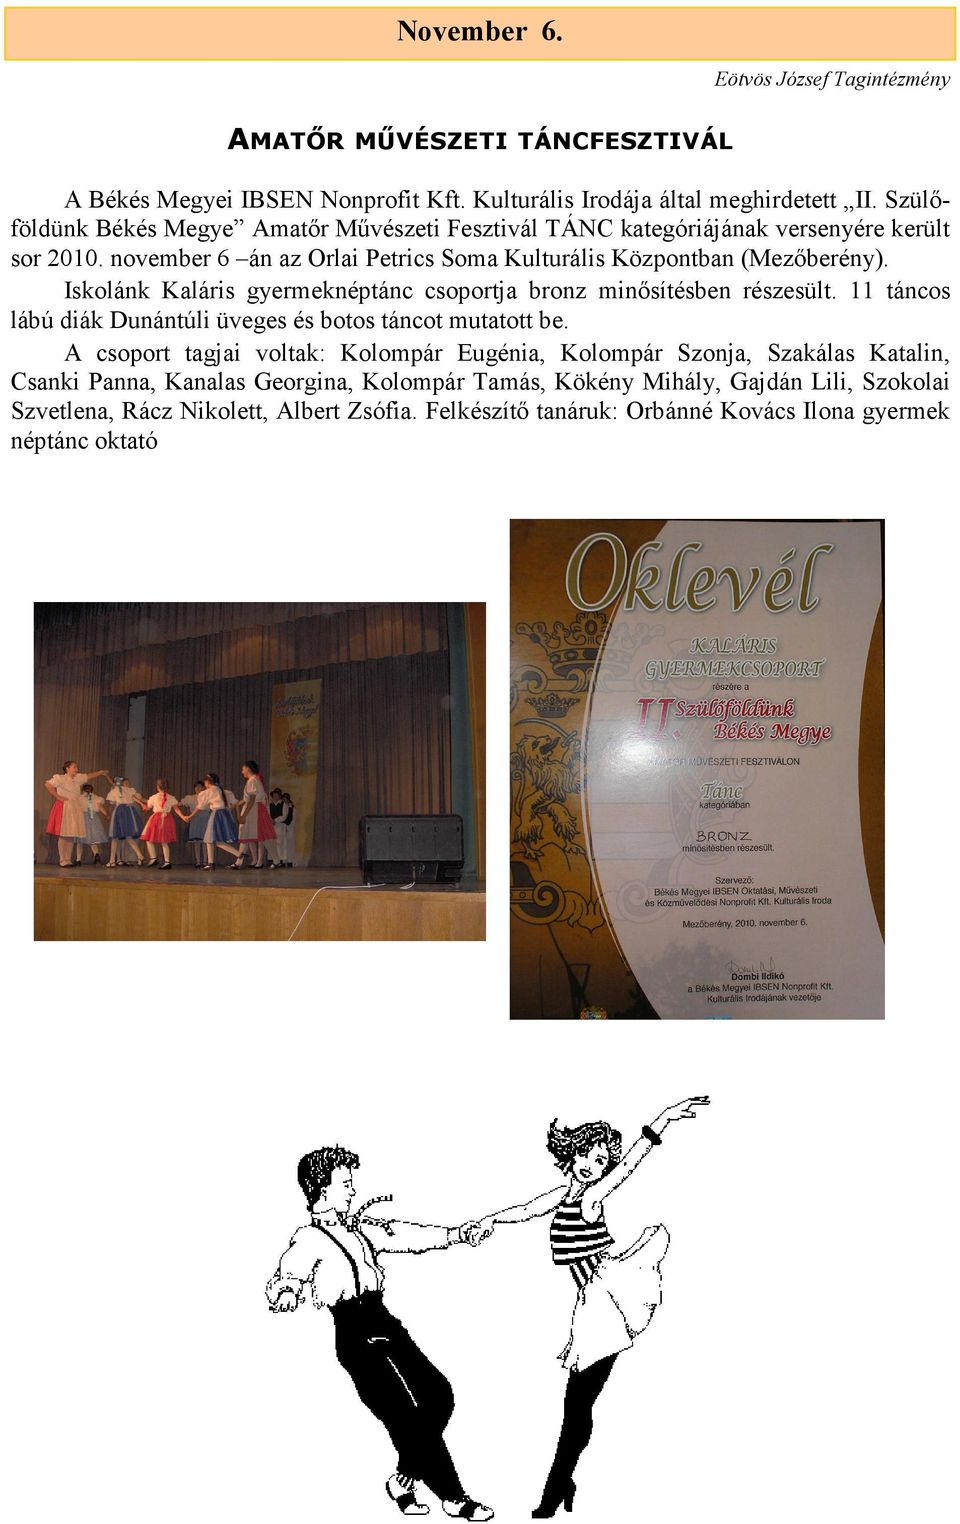 Iskolánk Kaláris gyermeknéptánc csoportja bronz minősítésben részesült. 11 táncos lábú diák Dunántúli üveges és botos táncot mutatott be.